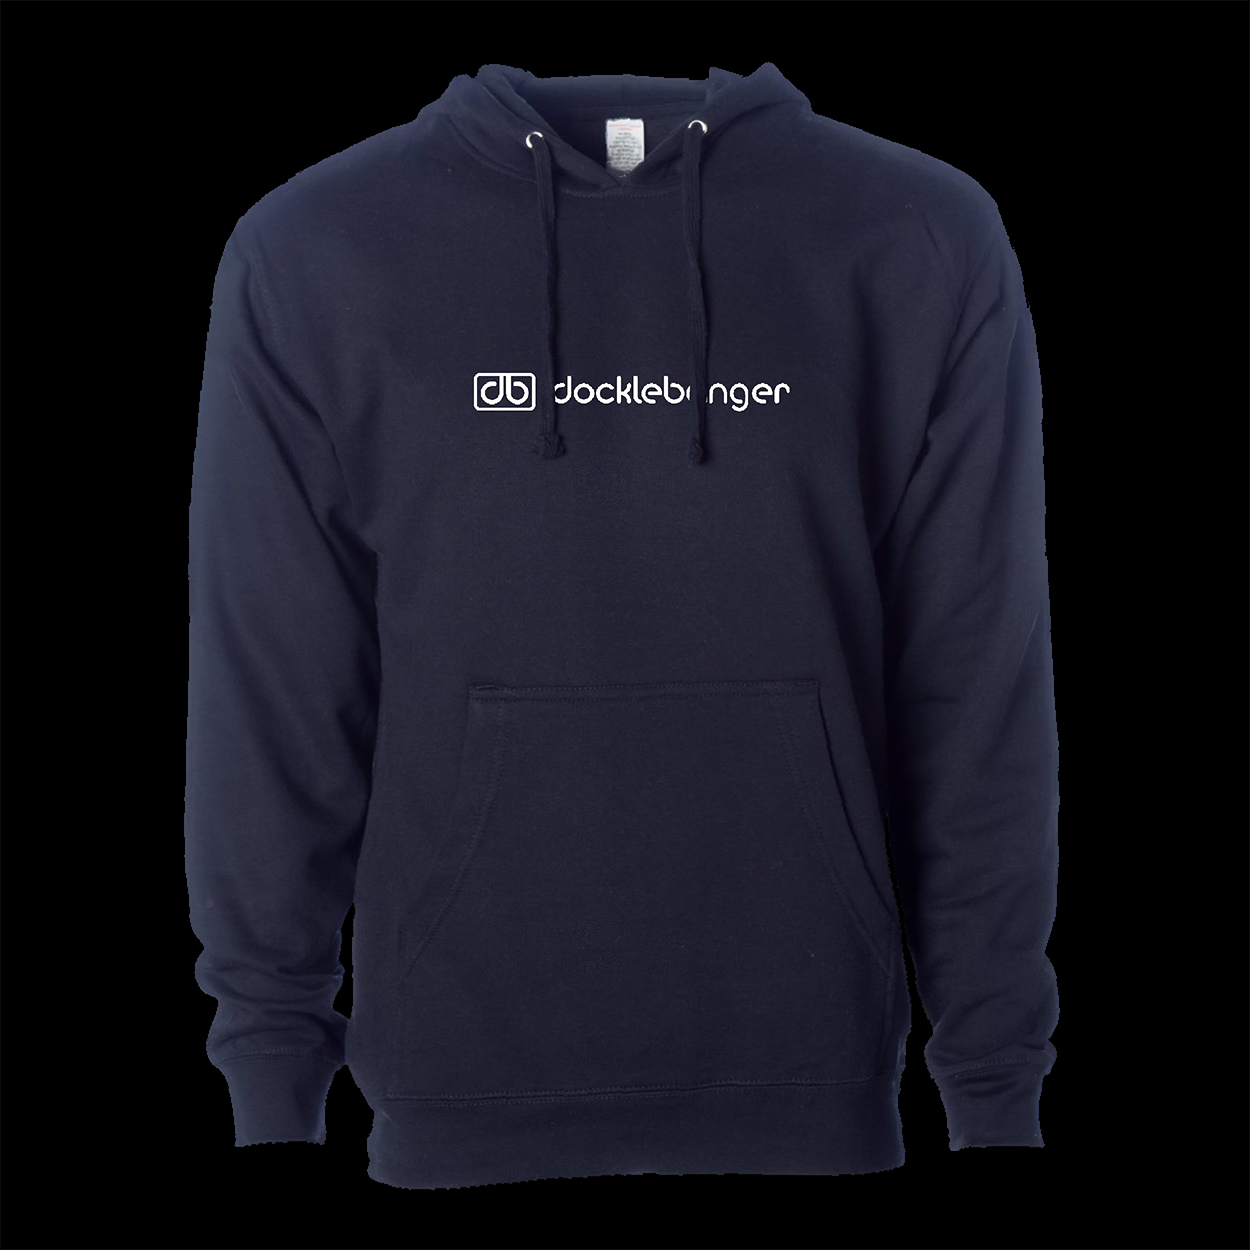 Docklebanger navy hoodie